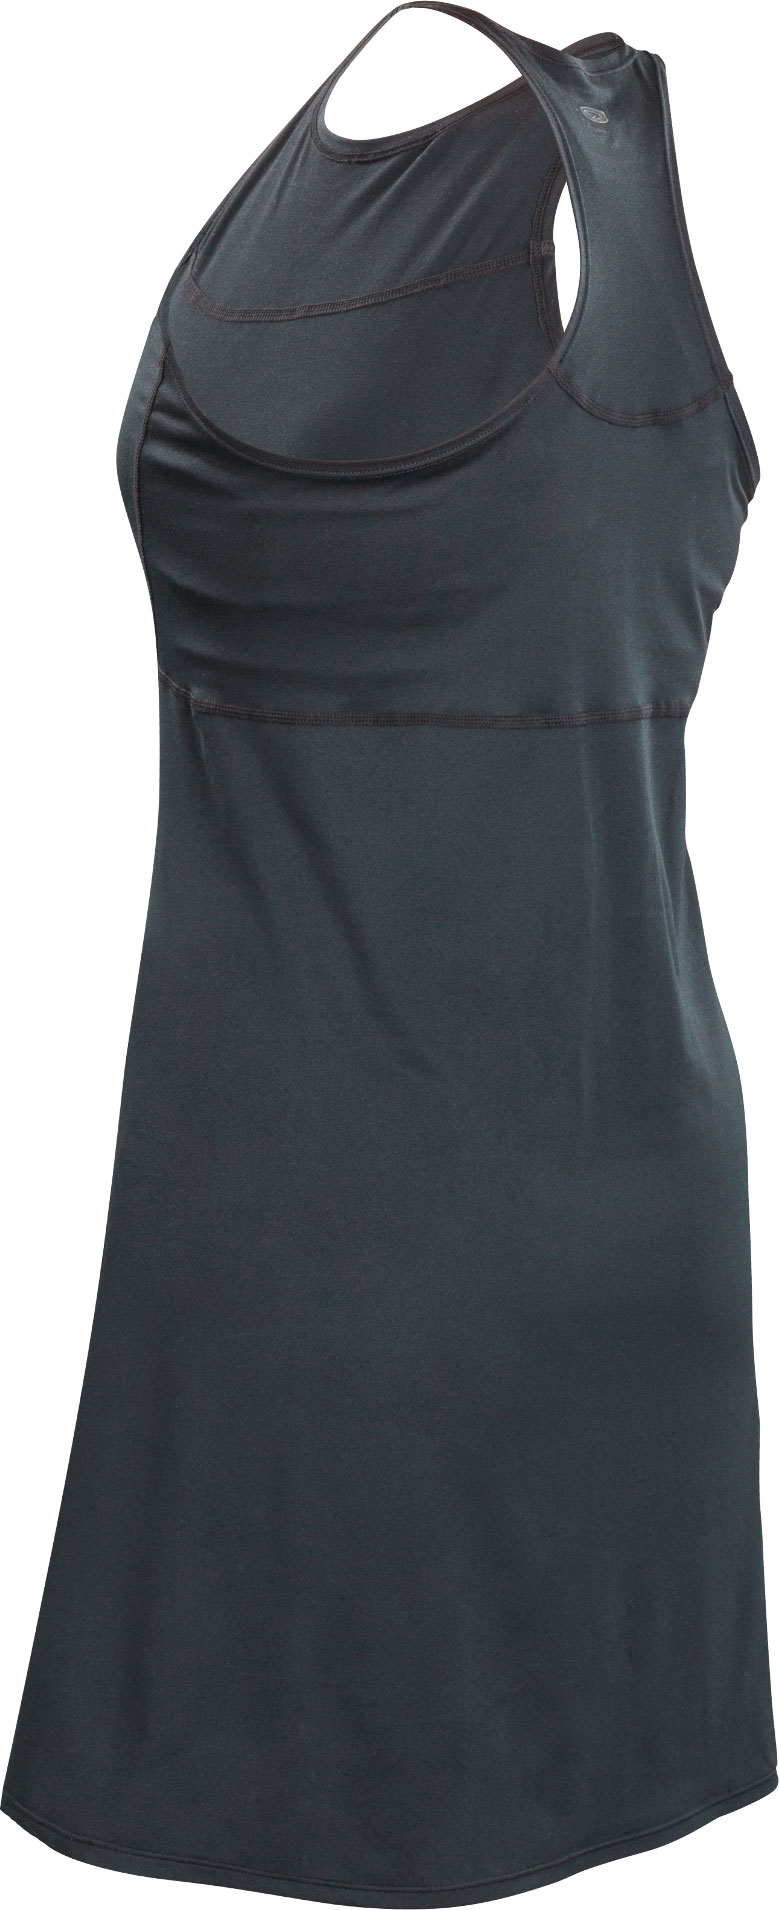 Платье Sugoi COAST, женское, BLK (чёрное), размер L фото 2